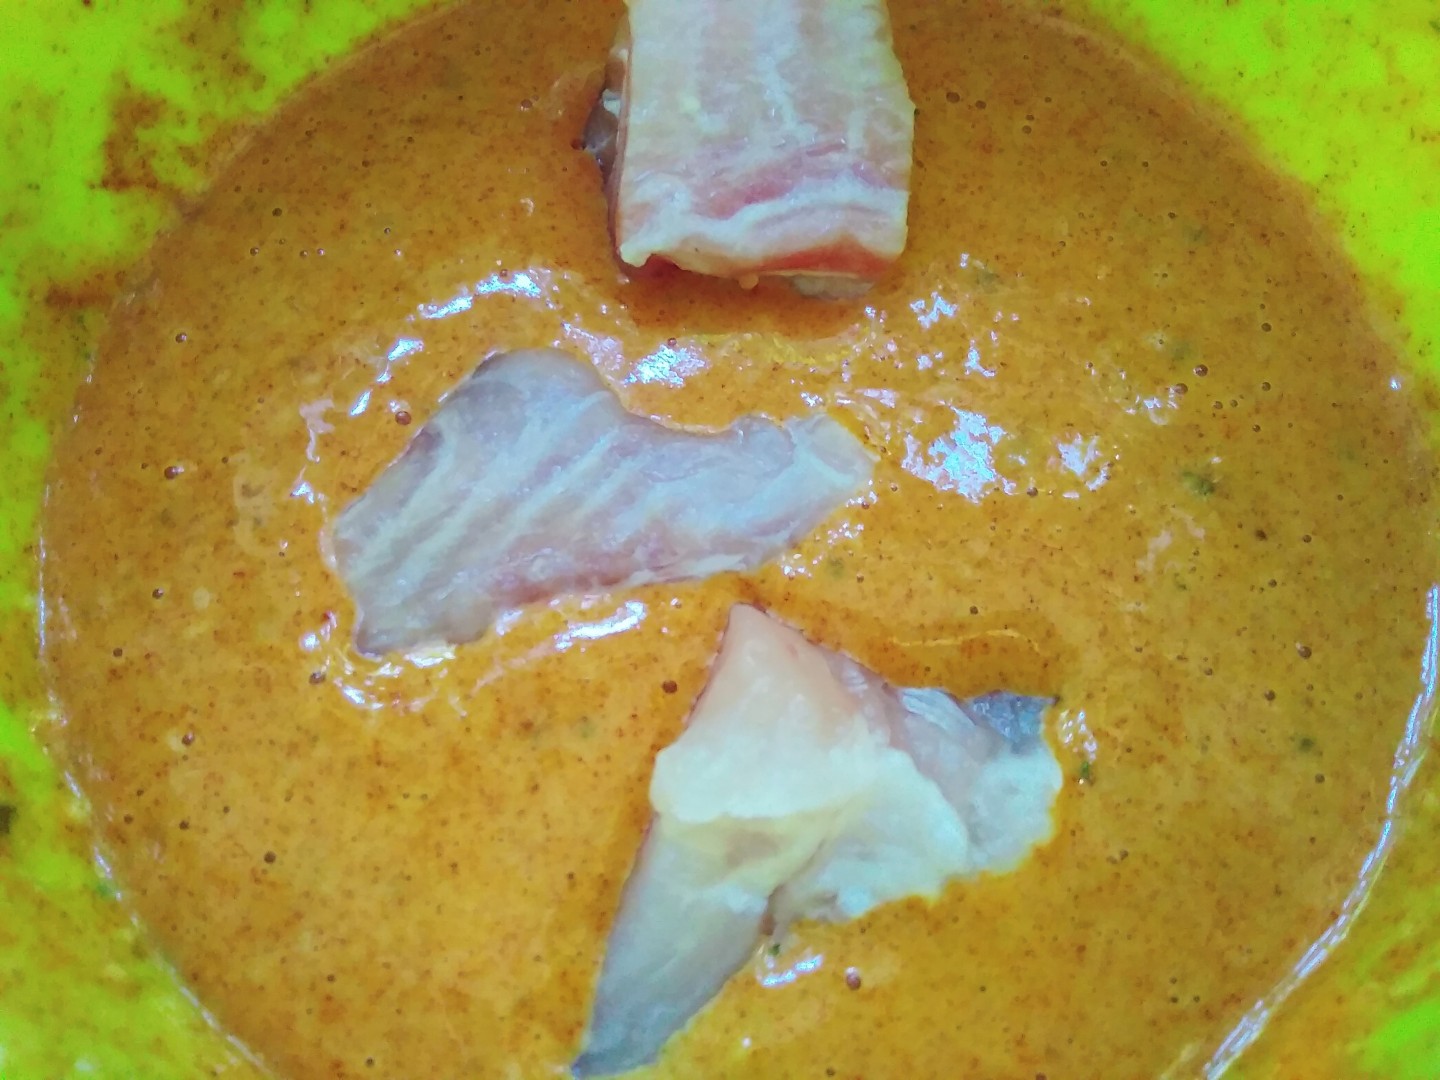 Морской язык в кляре на сковороде простой рецепт пошаговый с фото пошагово в домашних